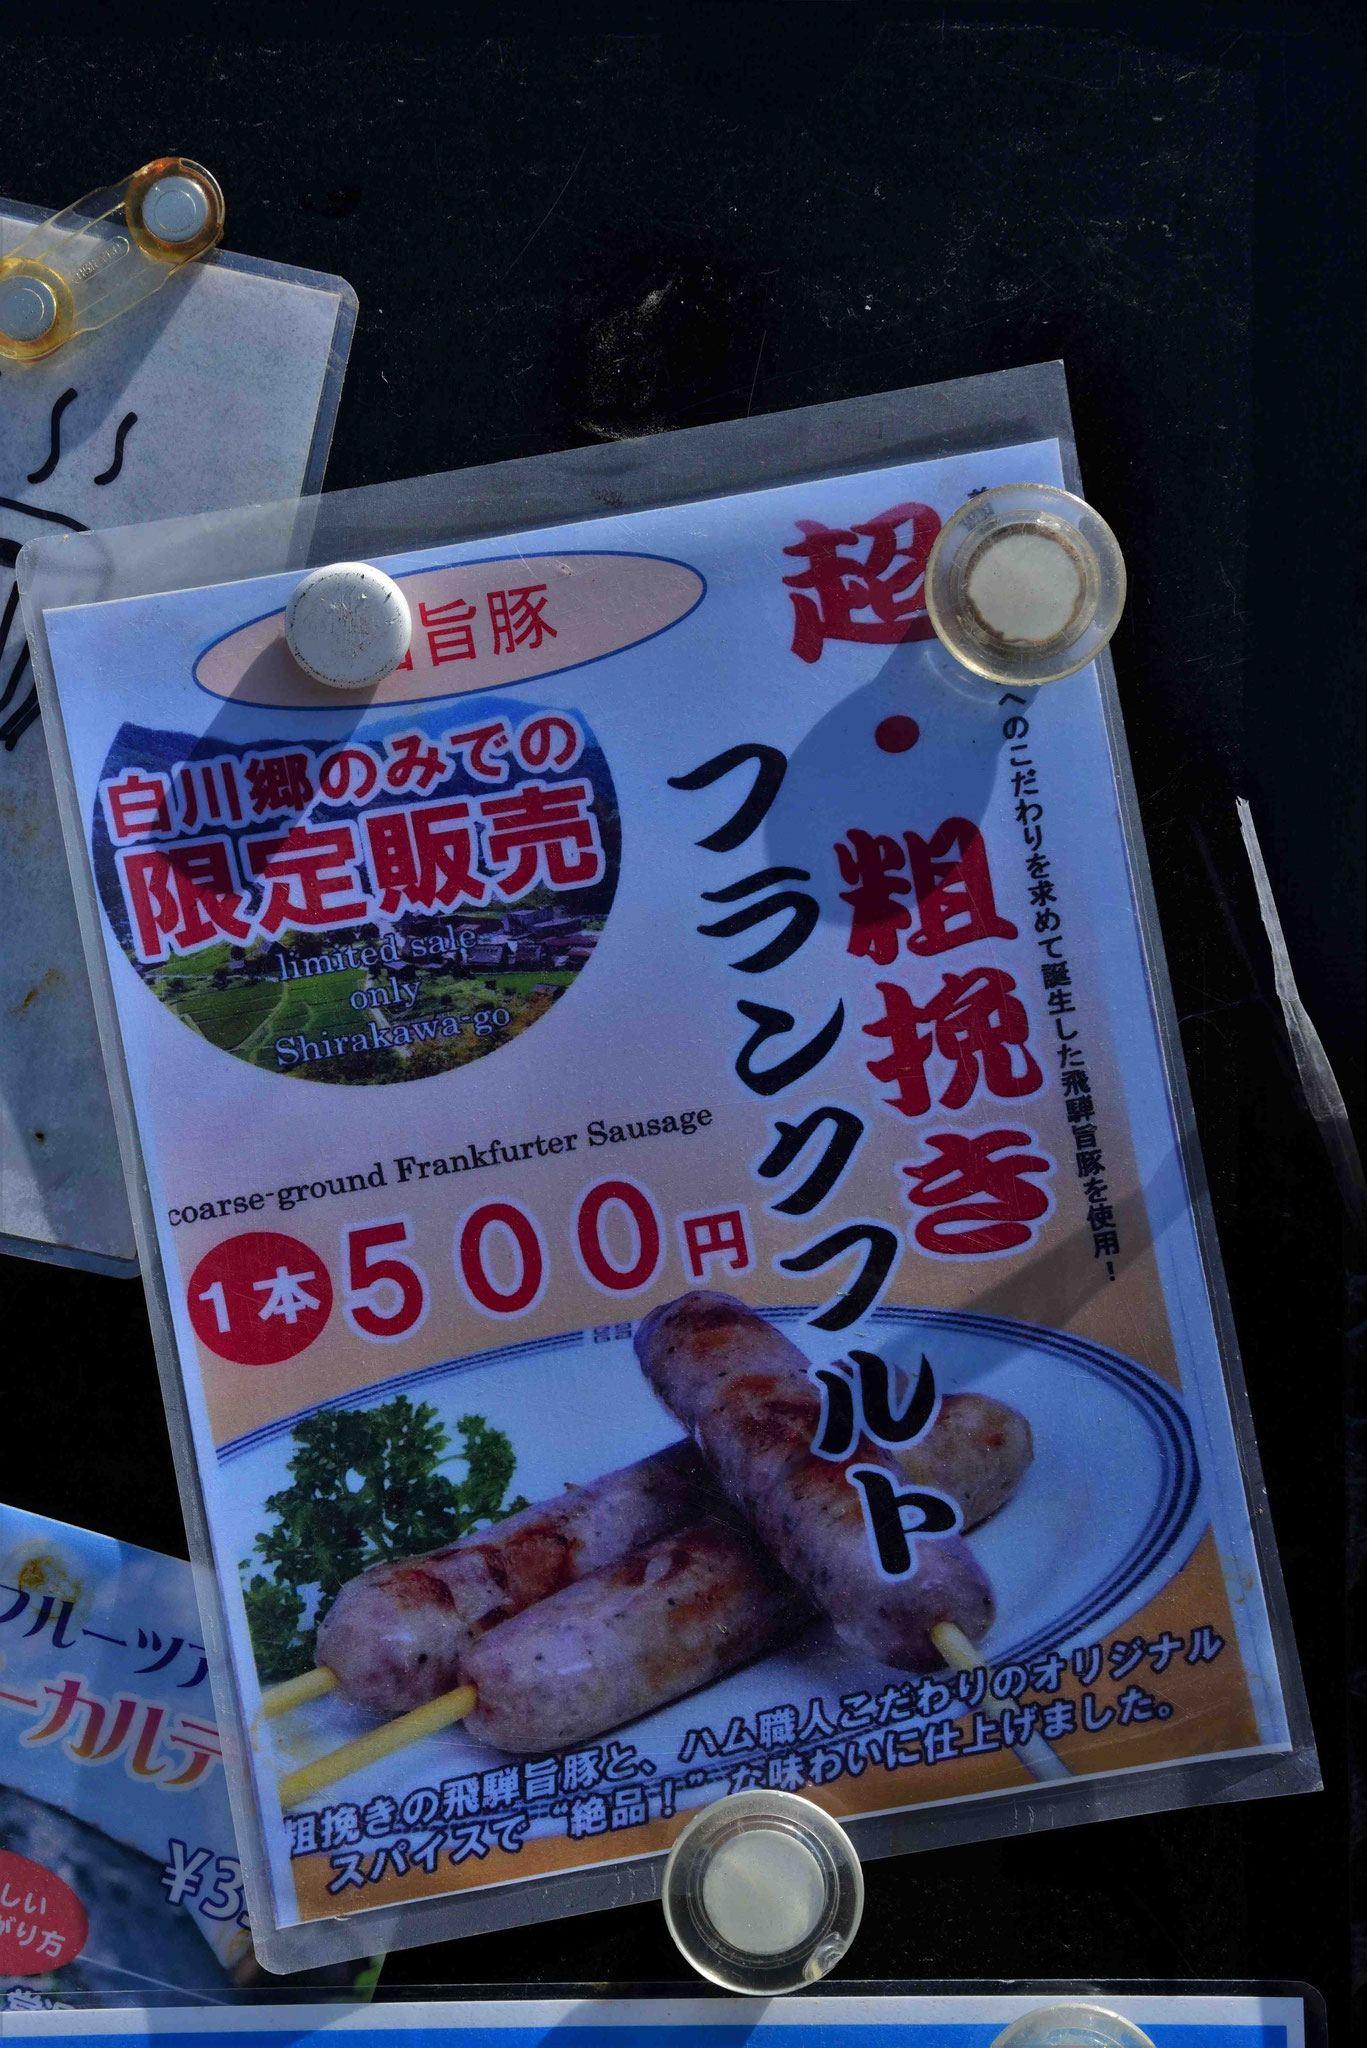 Frankfurter Würste nach japanischer Art gefällig?